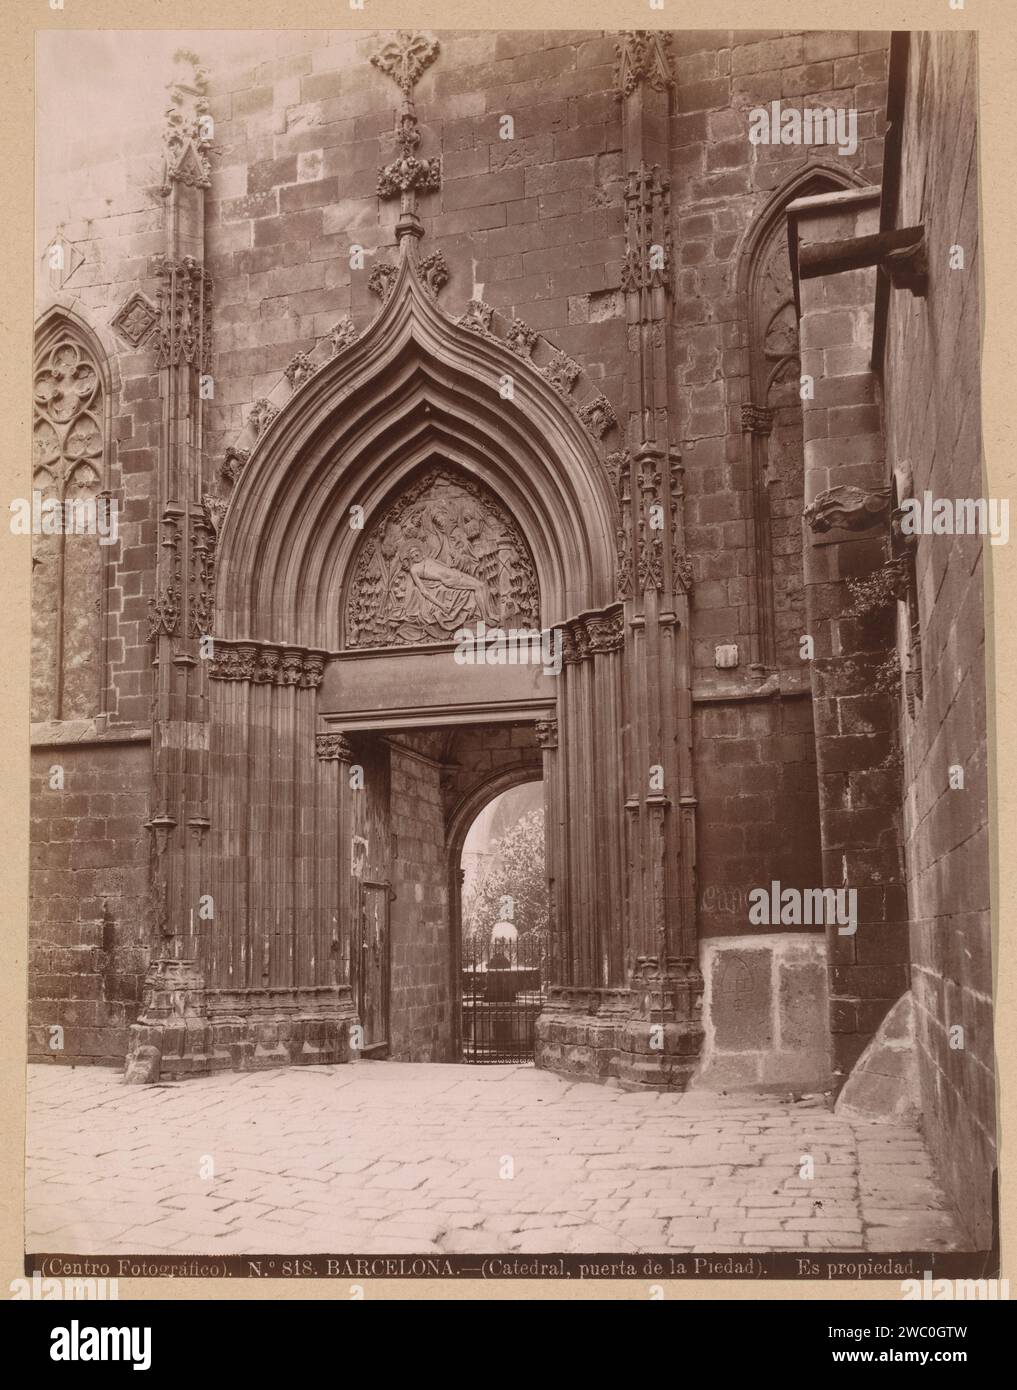 Veduta della Puerta de la Piedad nella cattedrale di Santa Croce e Sint Eulalia a Barcellona, Centro Fotográfico, 1851 - c. 1890 Fotografia questa foto fa parte di un album. Stampa in albume di carta di Barcellona all'interno della chiesa Cattedrale di Santa Croce e Sint Eulalia Foto Stock